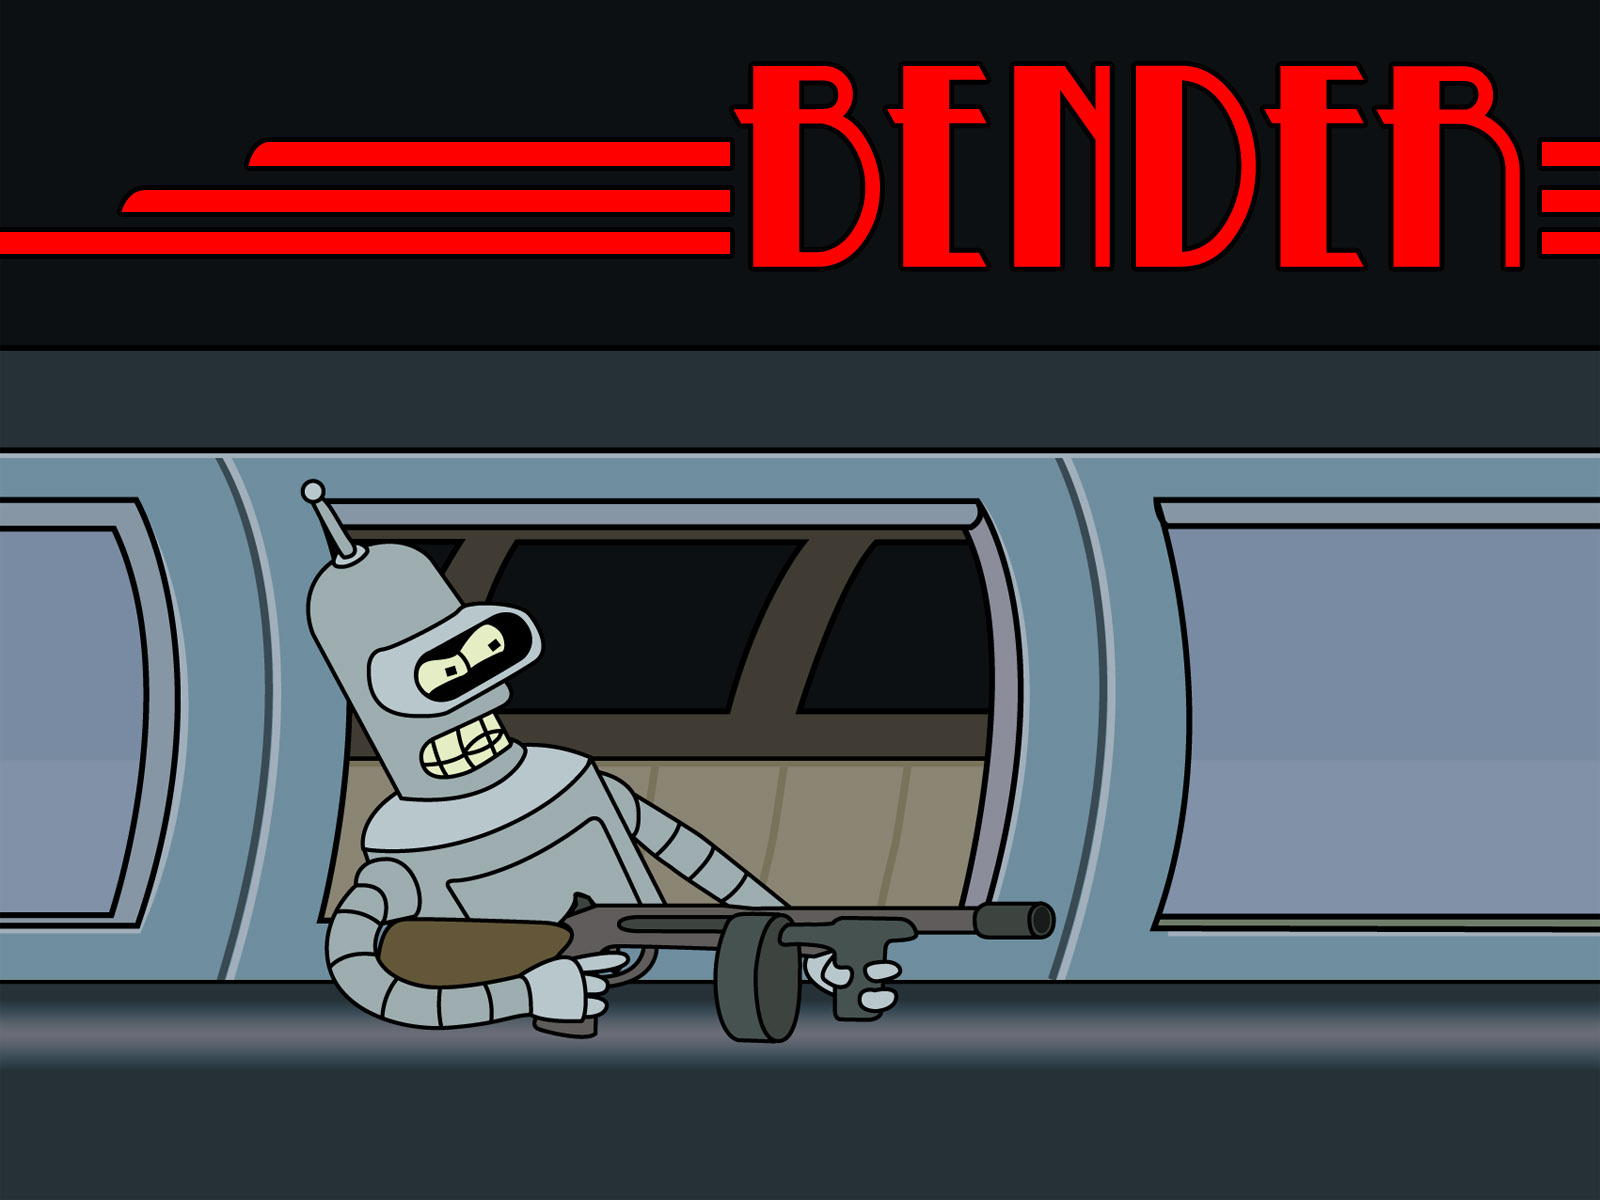 Descarga gratuita de fondo de pantalla para móvil de Futurama, Bender (Futurama), Series De Televisión.